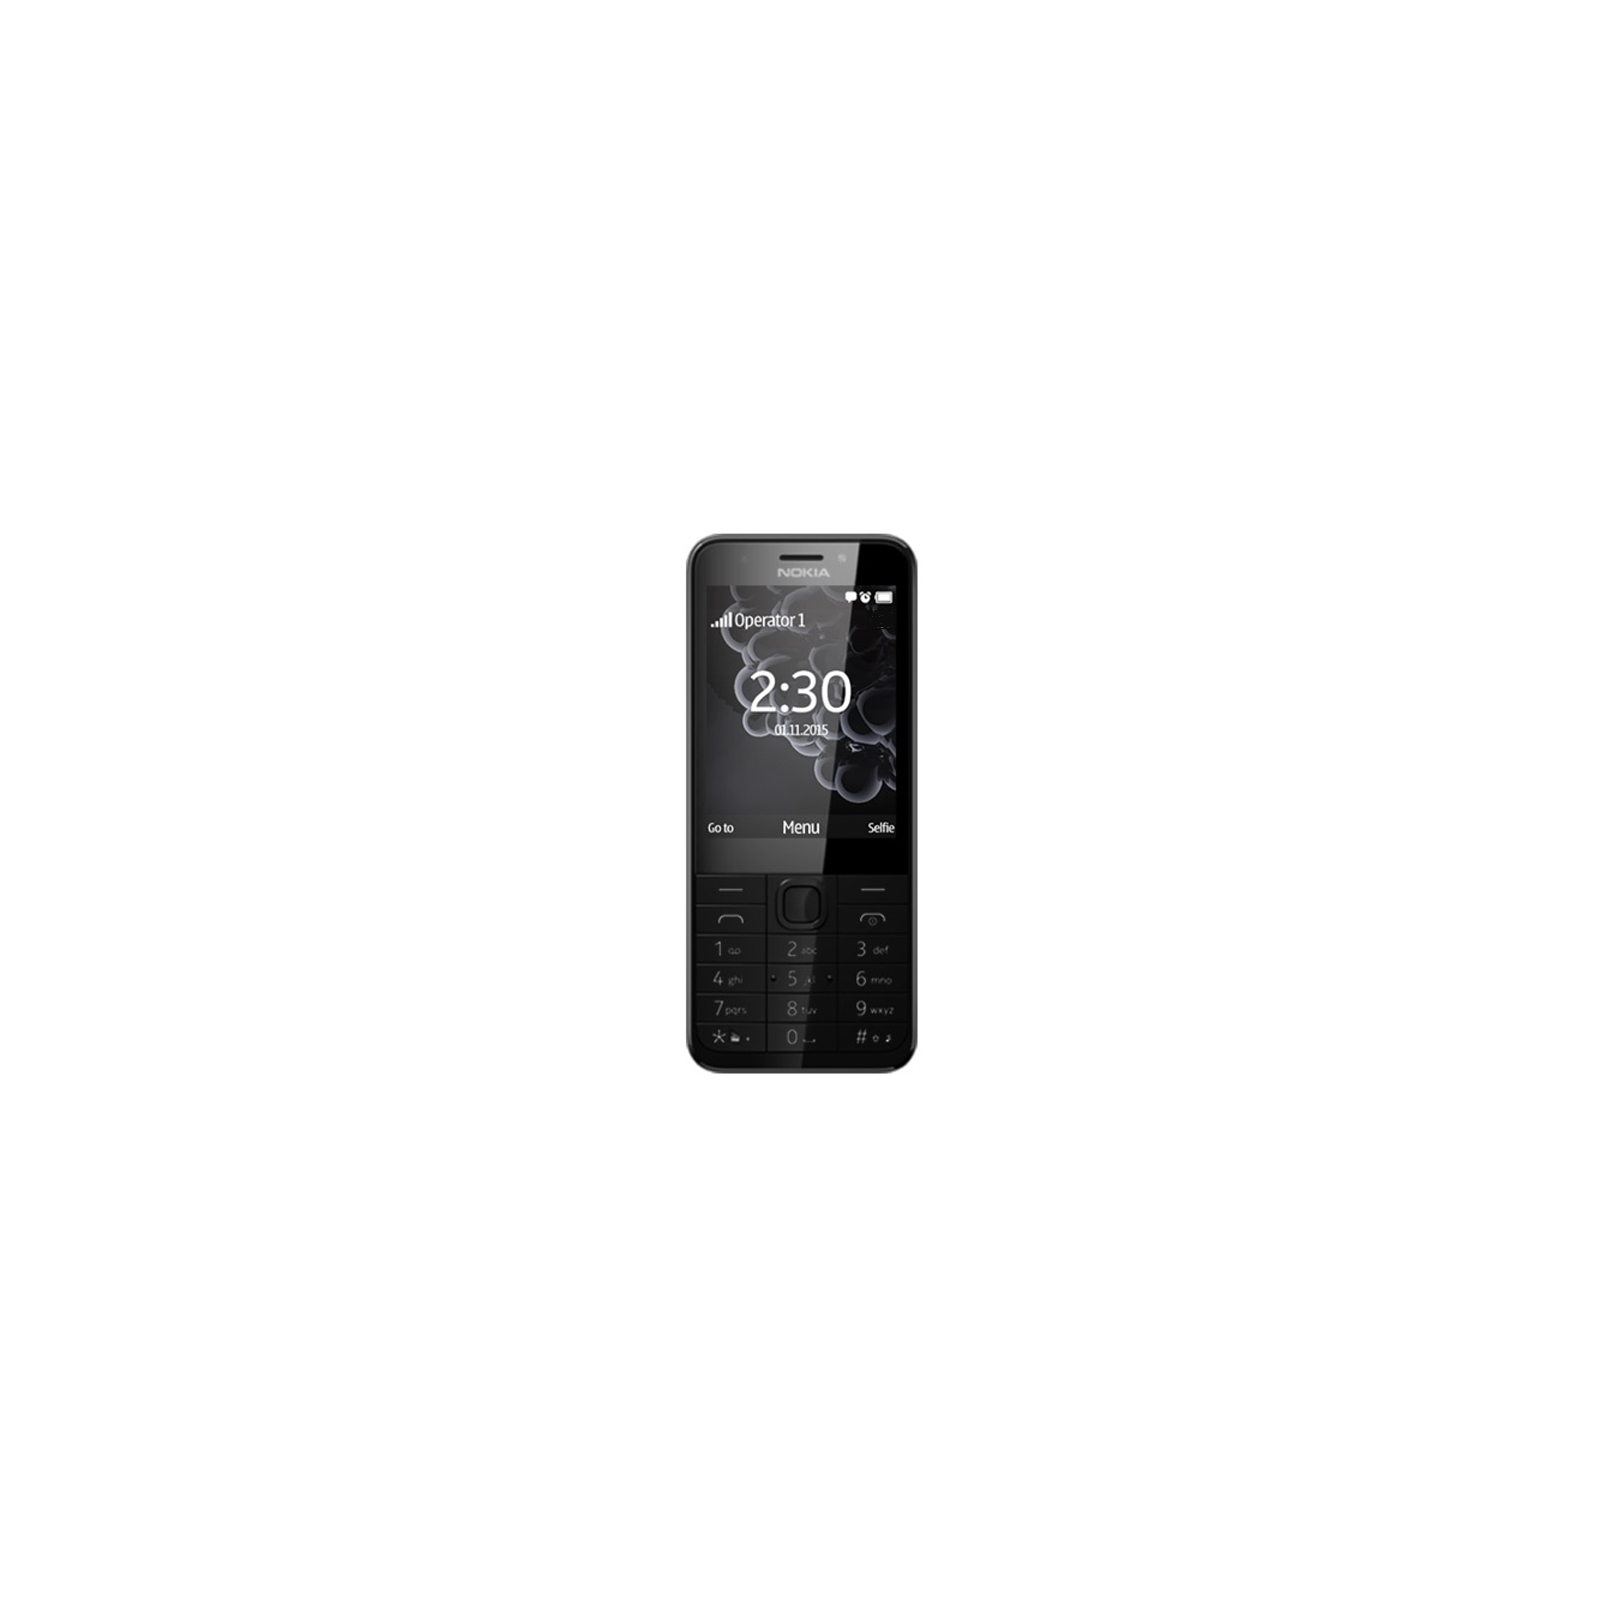 Мобильный телефон Nokia 230 Dual Dark Silver (A00026971)